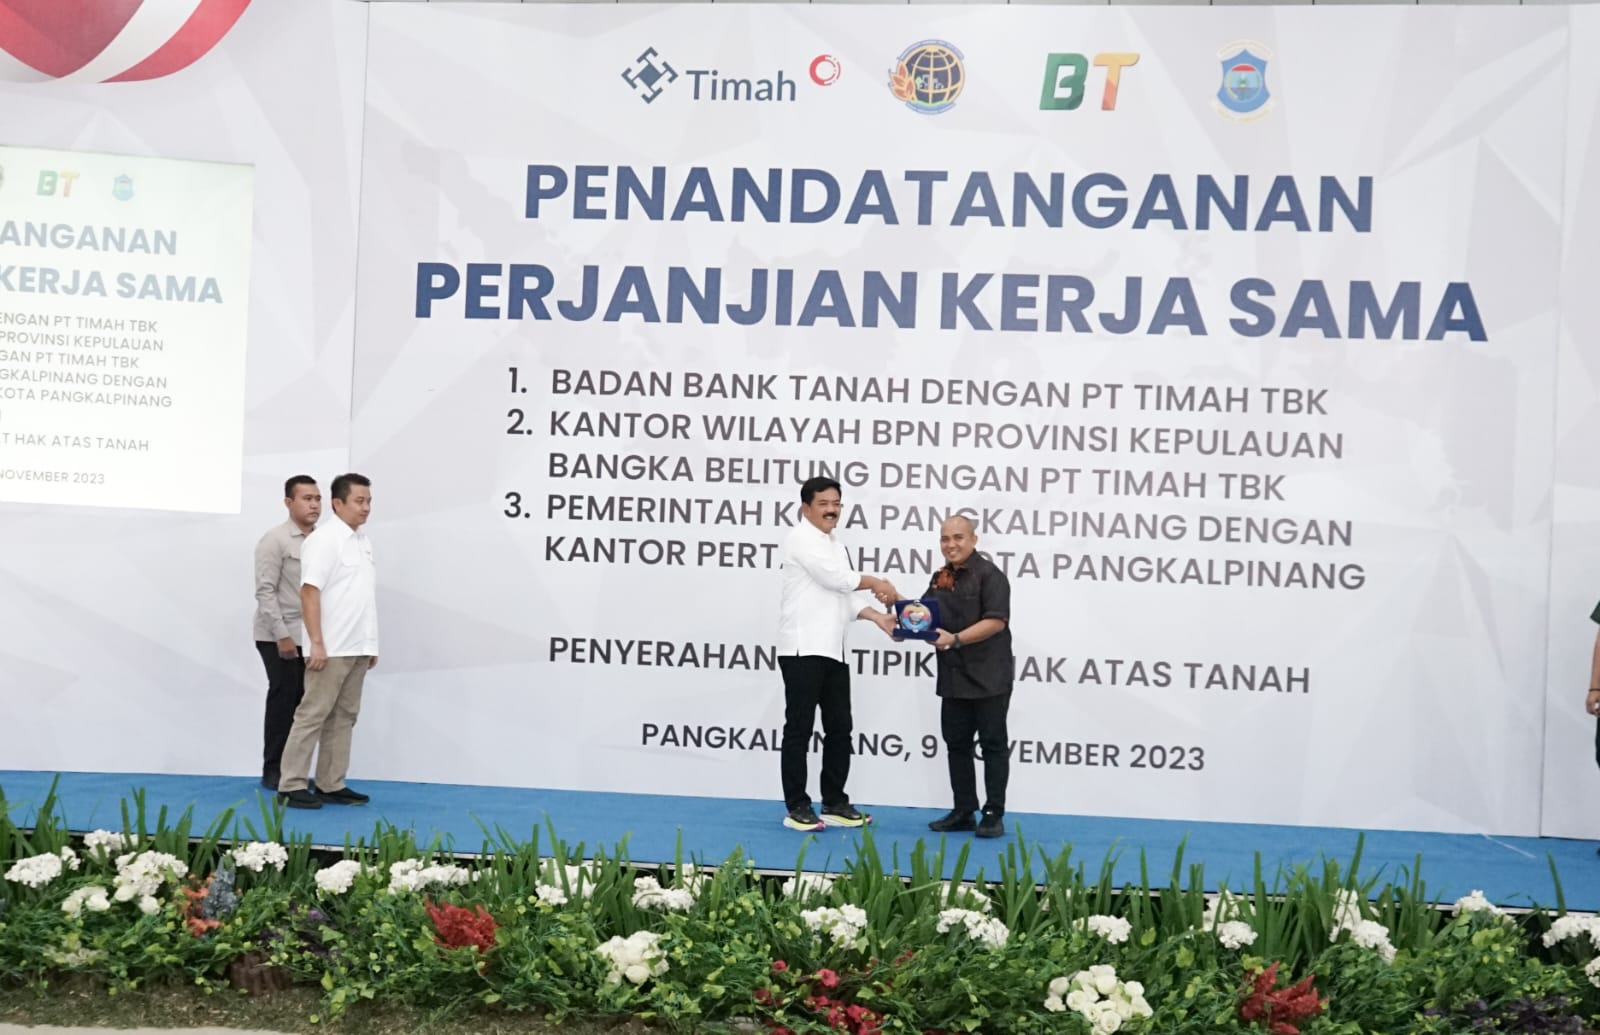 Menteri ATR/BPN Apresiasi Perjanjian Kerja Sama dengan Pemkot Pangkalpinang